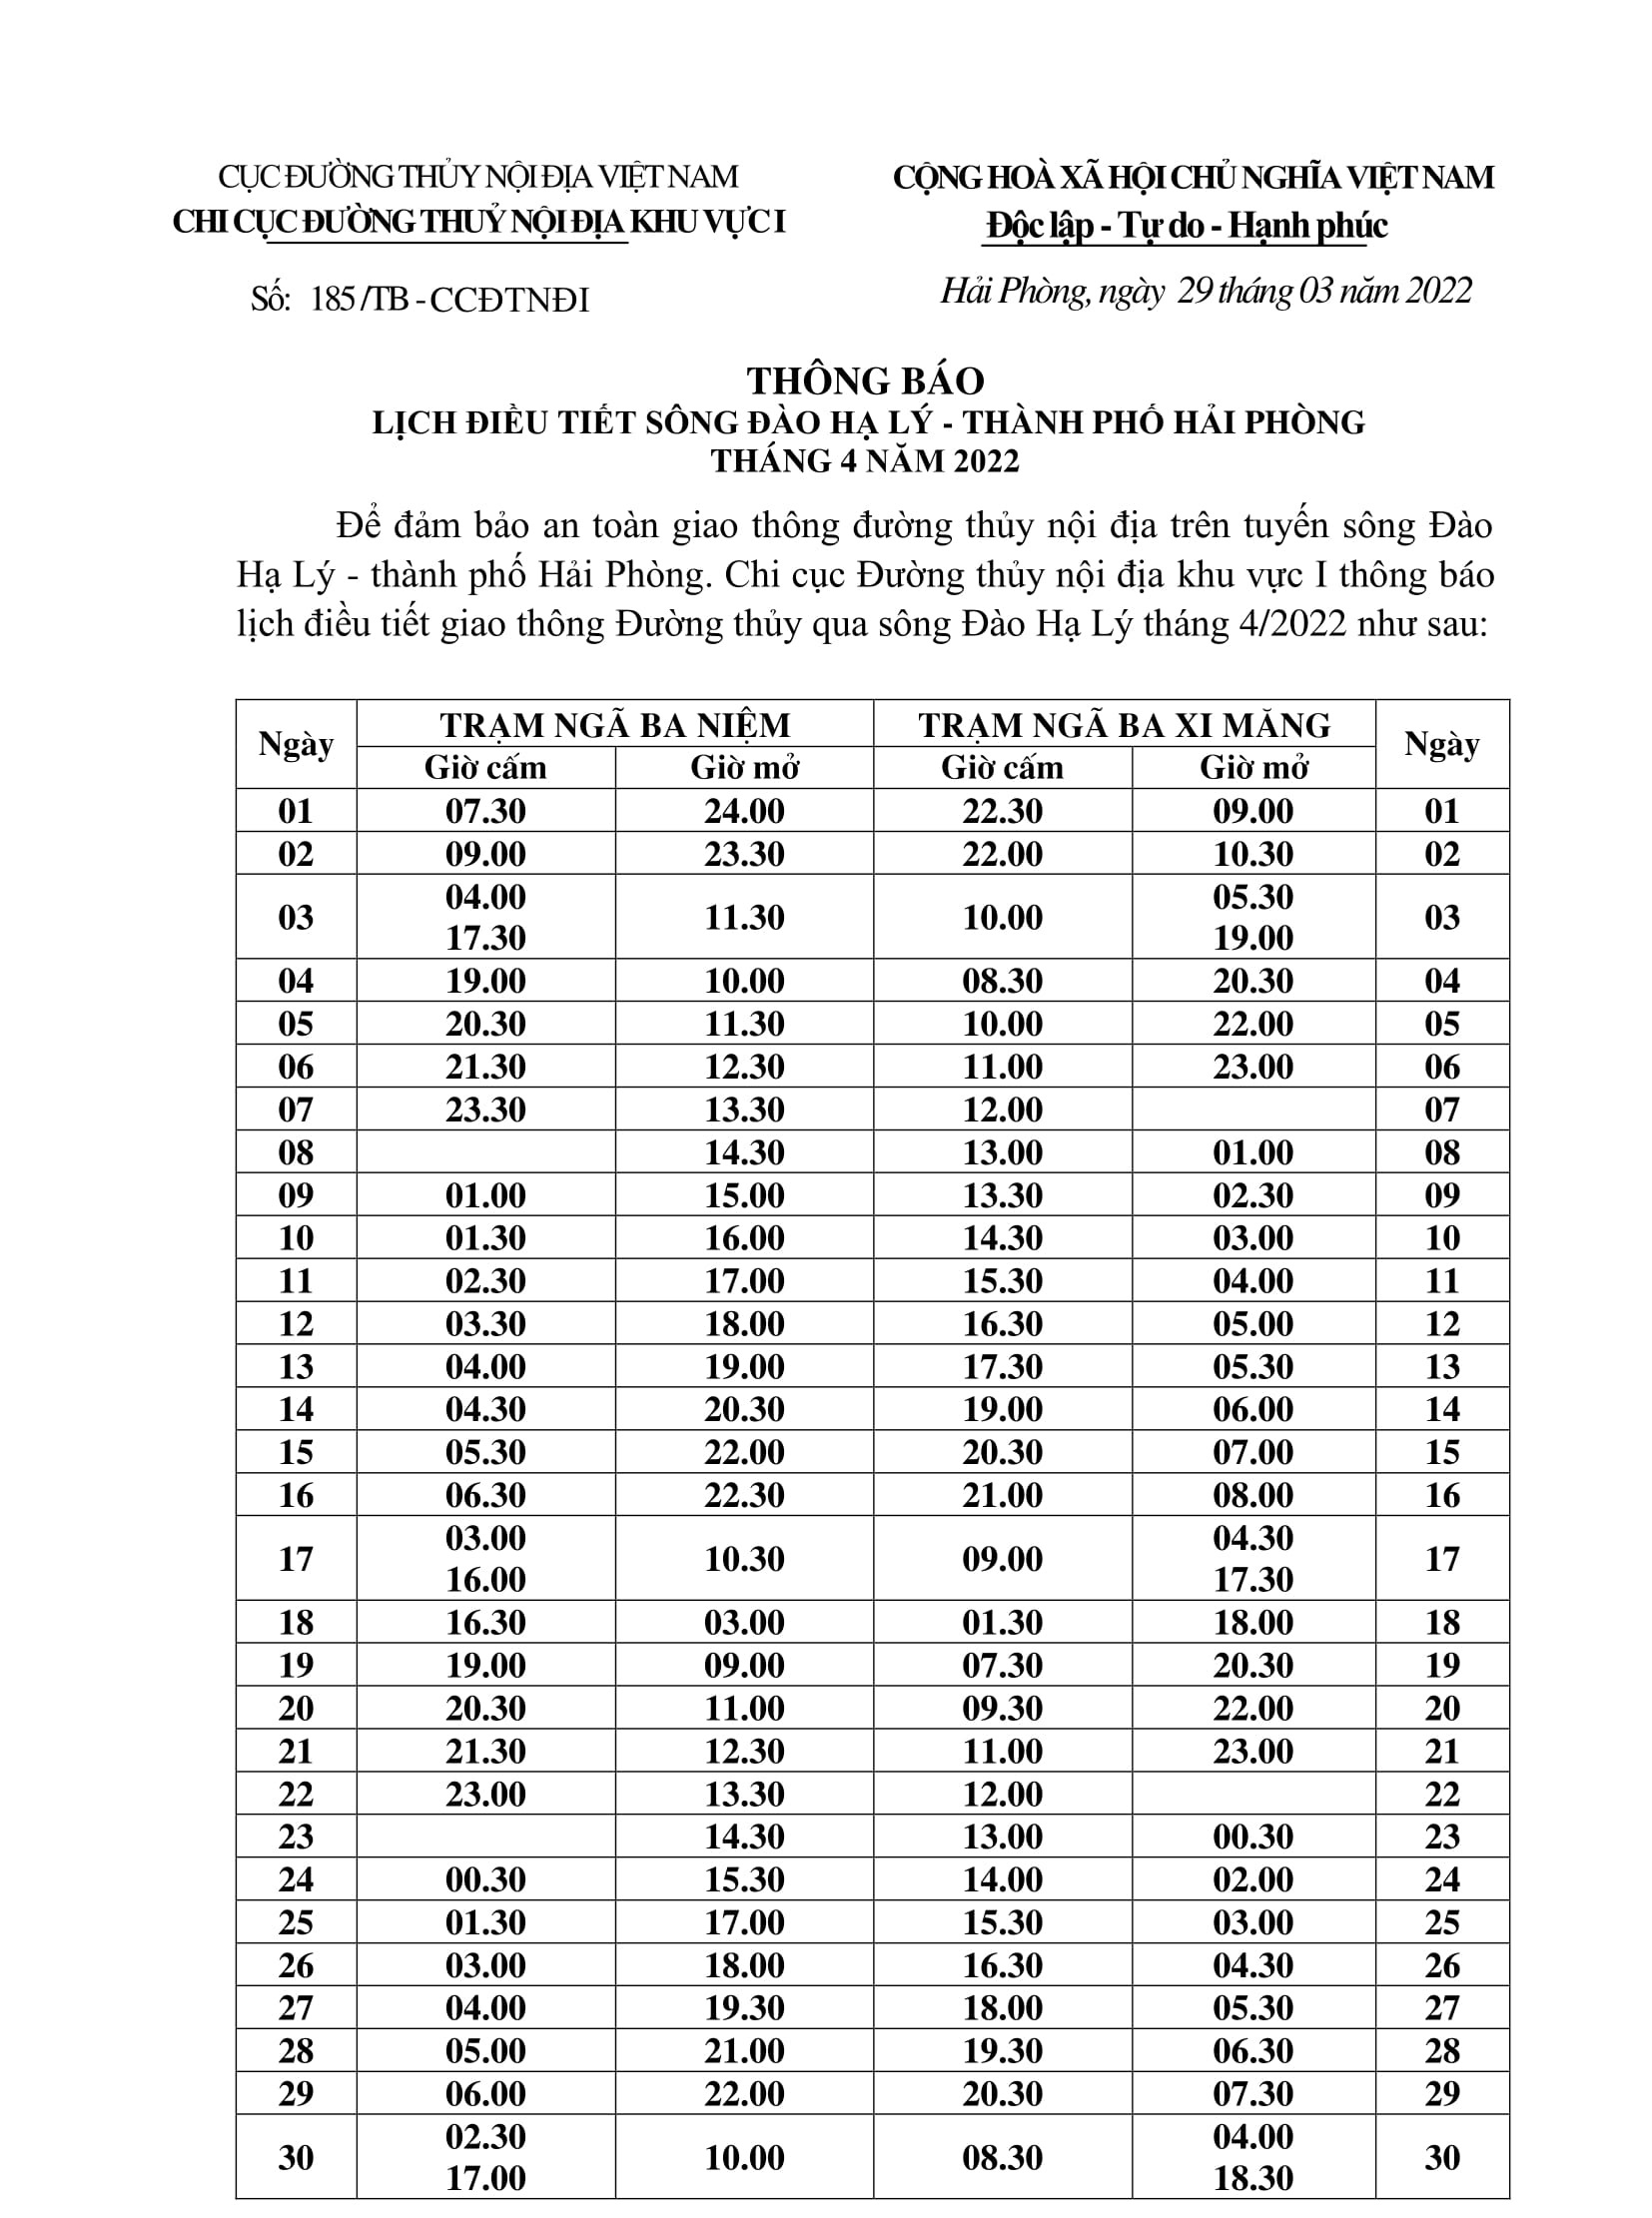 Thông báo điều chỉnh lịch điều tiết sông Đào Hạ Lý - TP Hải Phòng tháng 04/2022